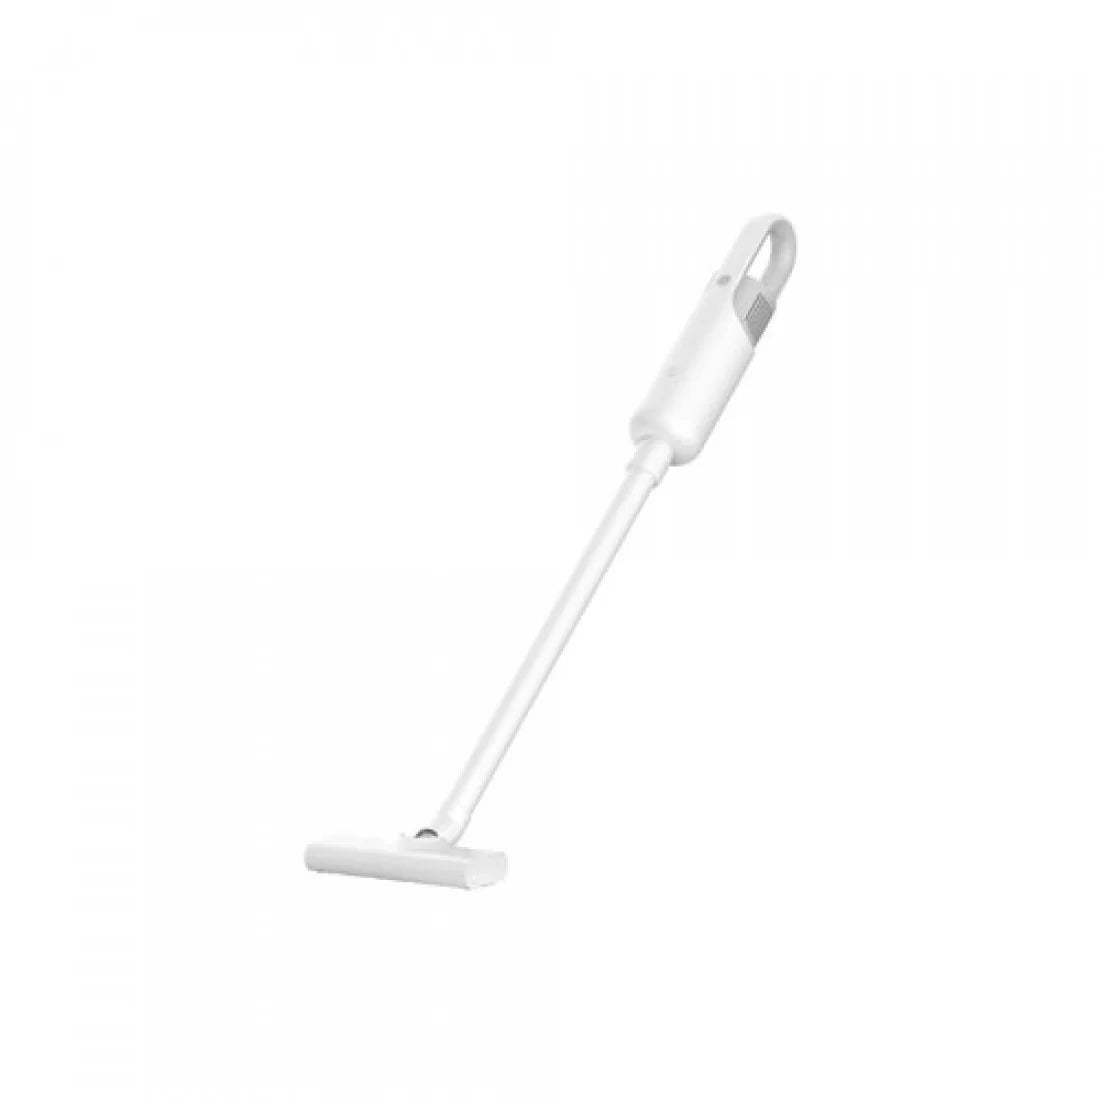 Xiaomi MiJia Vacuum Stick Cleaner